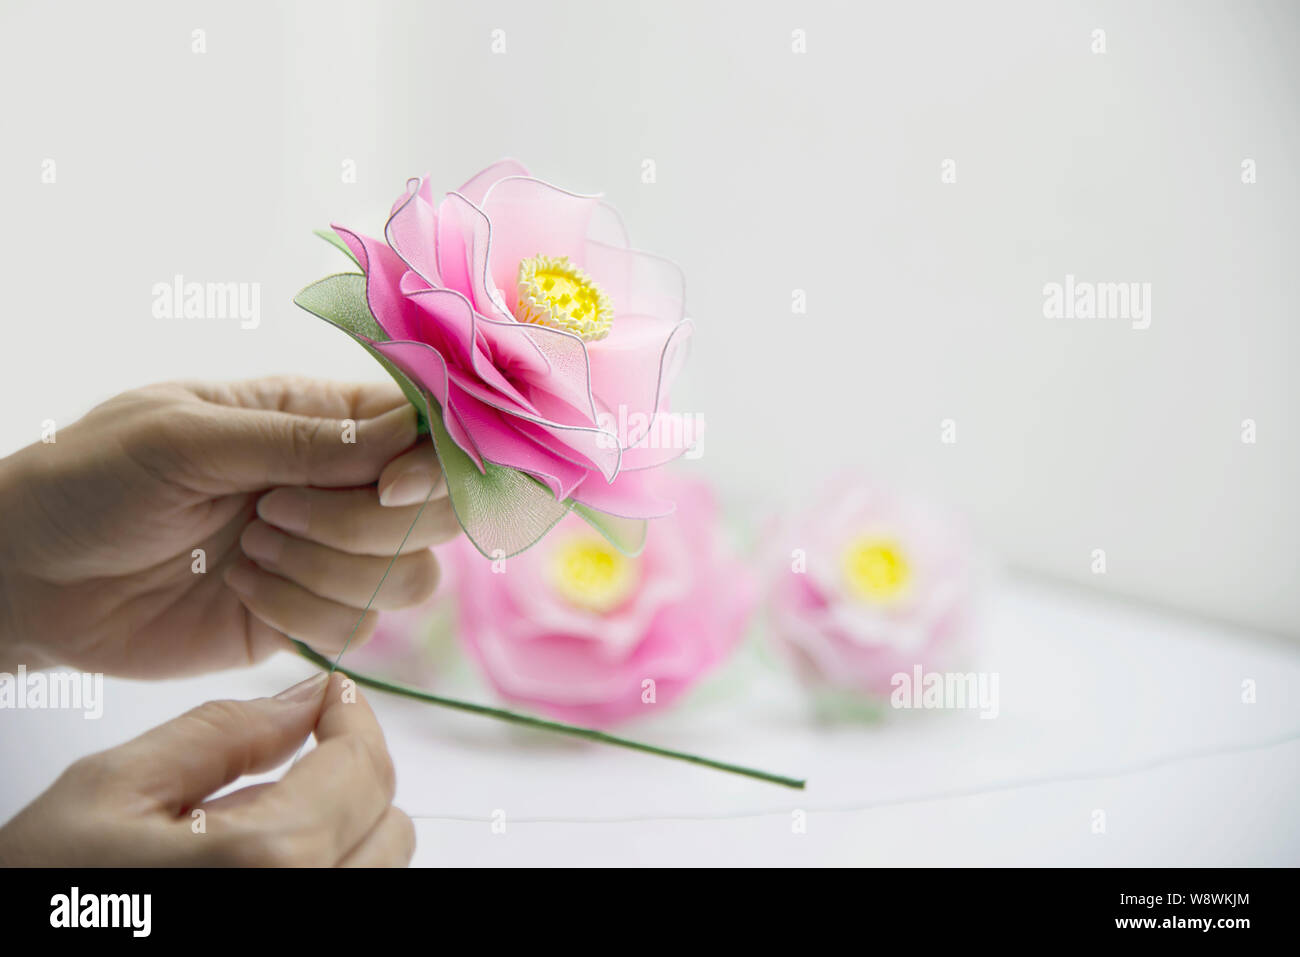 Femme faisant de belles fleurs en nylon - personnes avec DIY handmade concept fleurs Banque D'Images